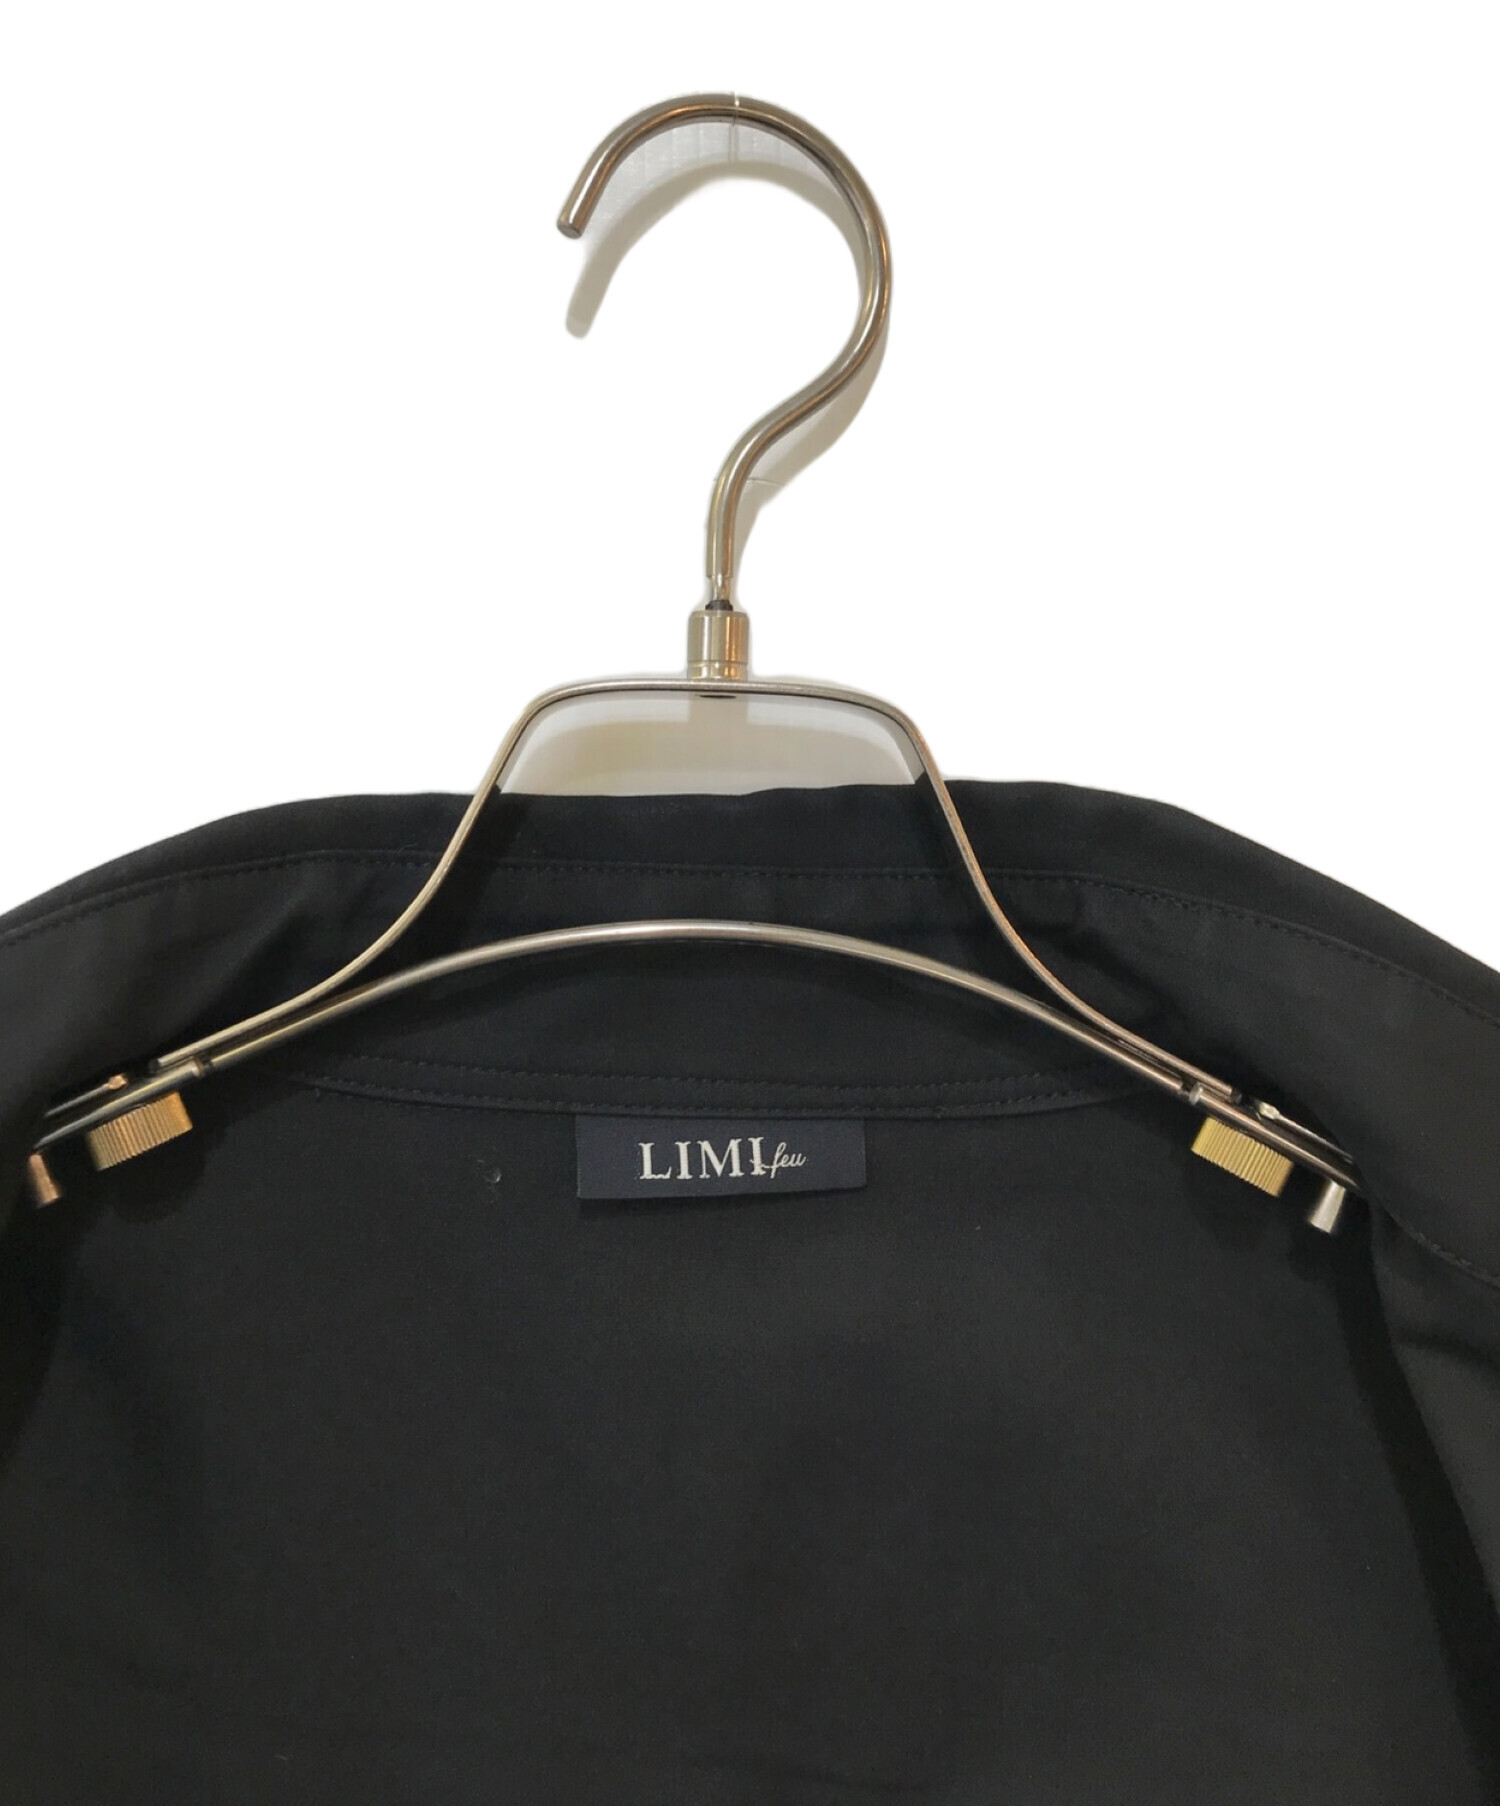 LIMI feu (リミフゥ) ステンカラーコート ブラック サイズ:S